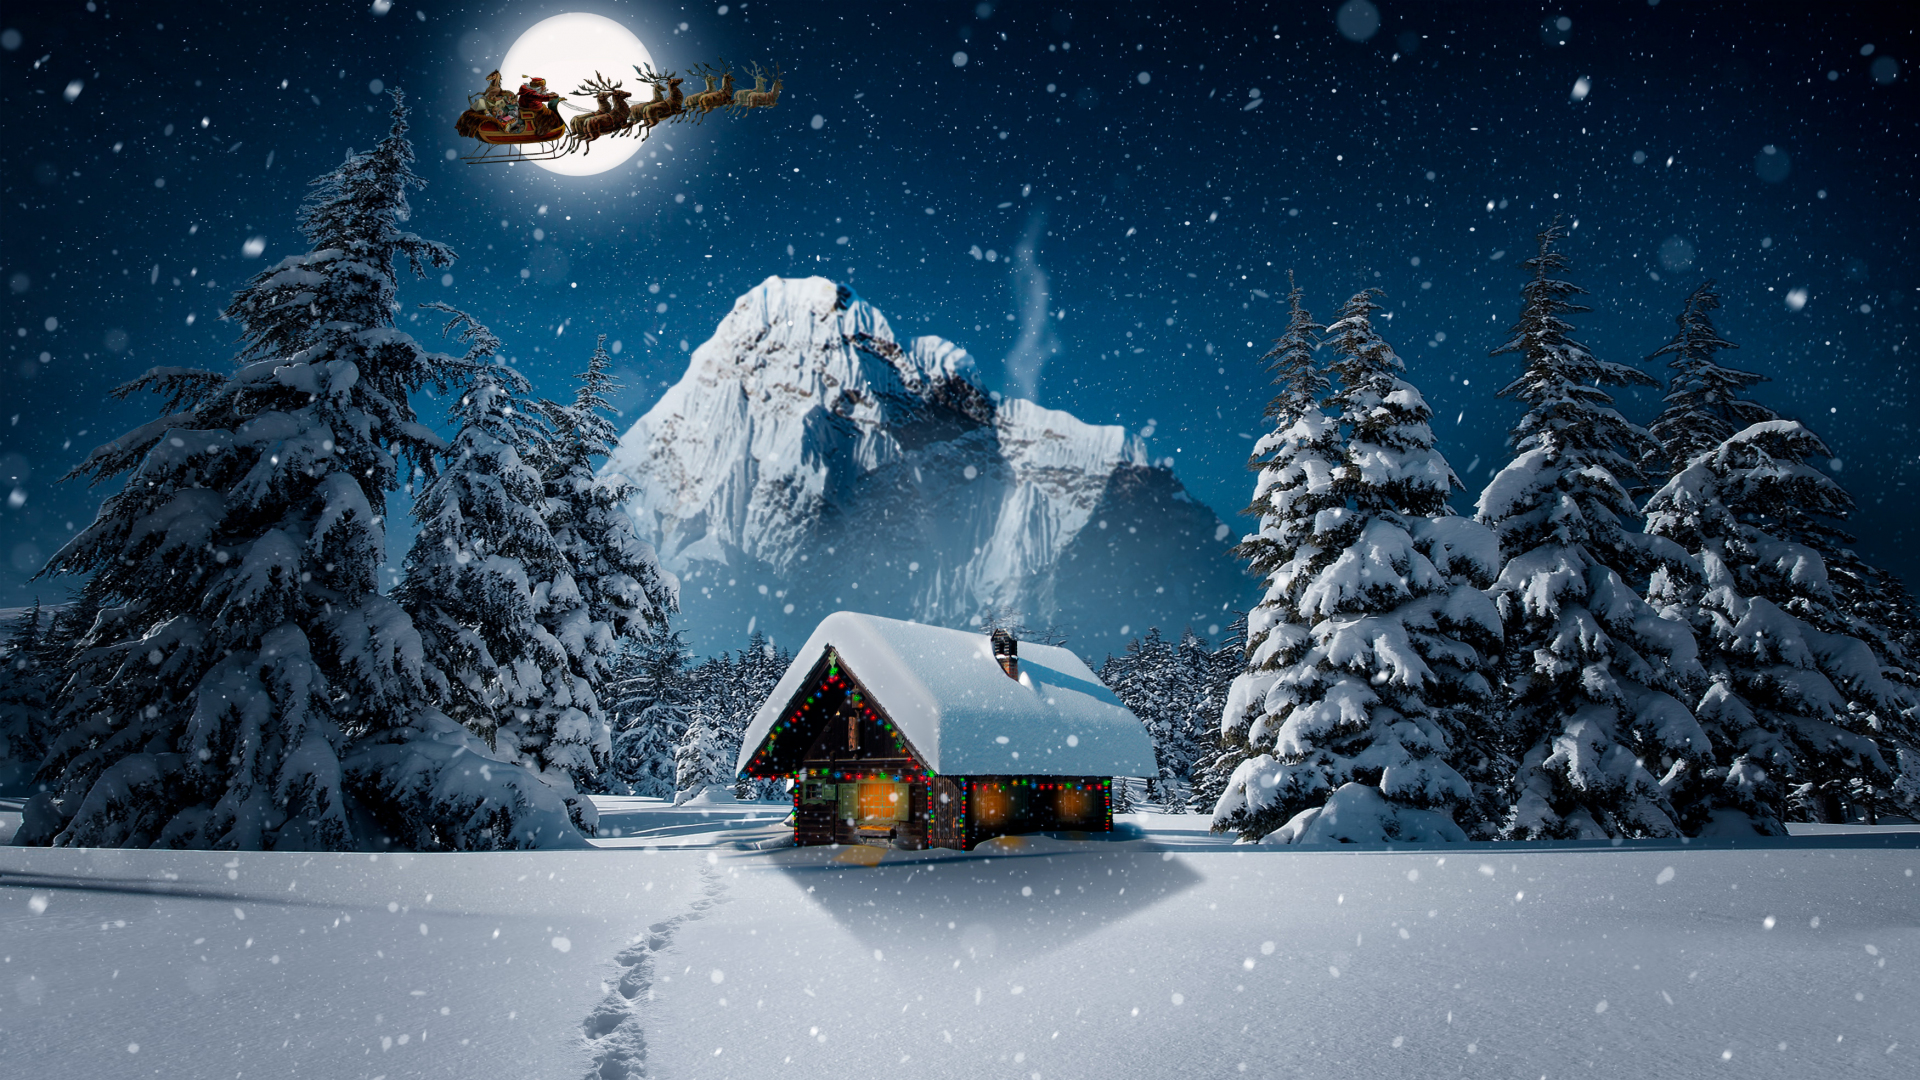 Tuyết rơi, đông, nhà gỗ, Noel: Hình ảnh về tuyết rơi, đông và những ngôi nhà gỗ trong mùa lễ hội Noel sẽ mang lại cho bạn cảm giác như đang sống trong một môi trường lãng mạn của thế giới cổ tích. Hãy cùng đón mùa lễ hội thật đặc biệt với bộ sưu tập hình ảnh độc đáo này.